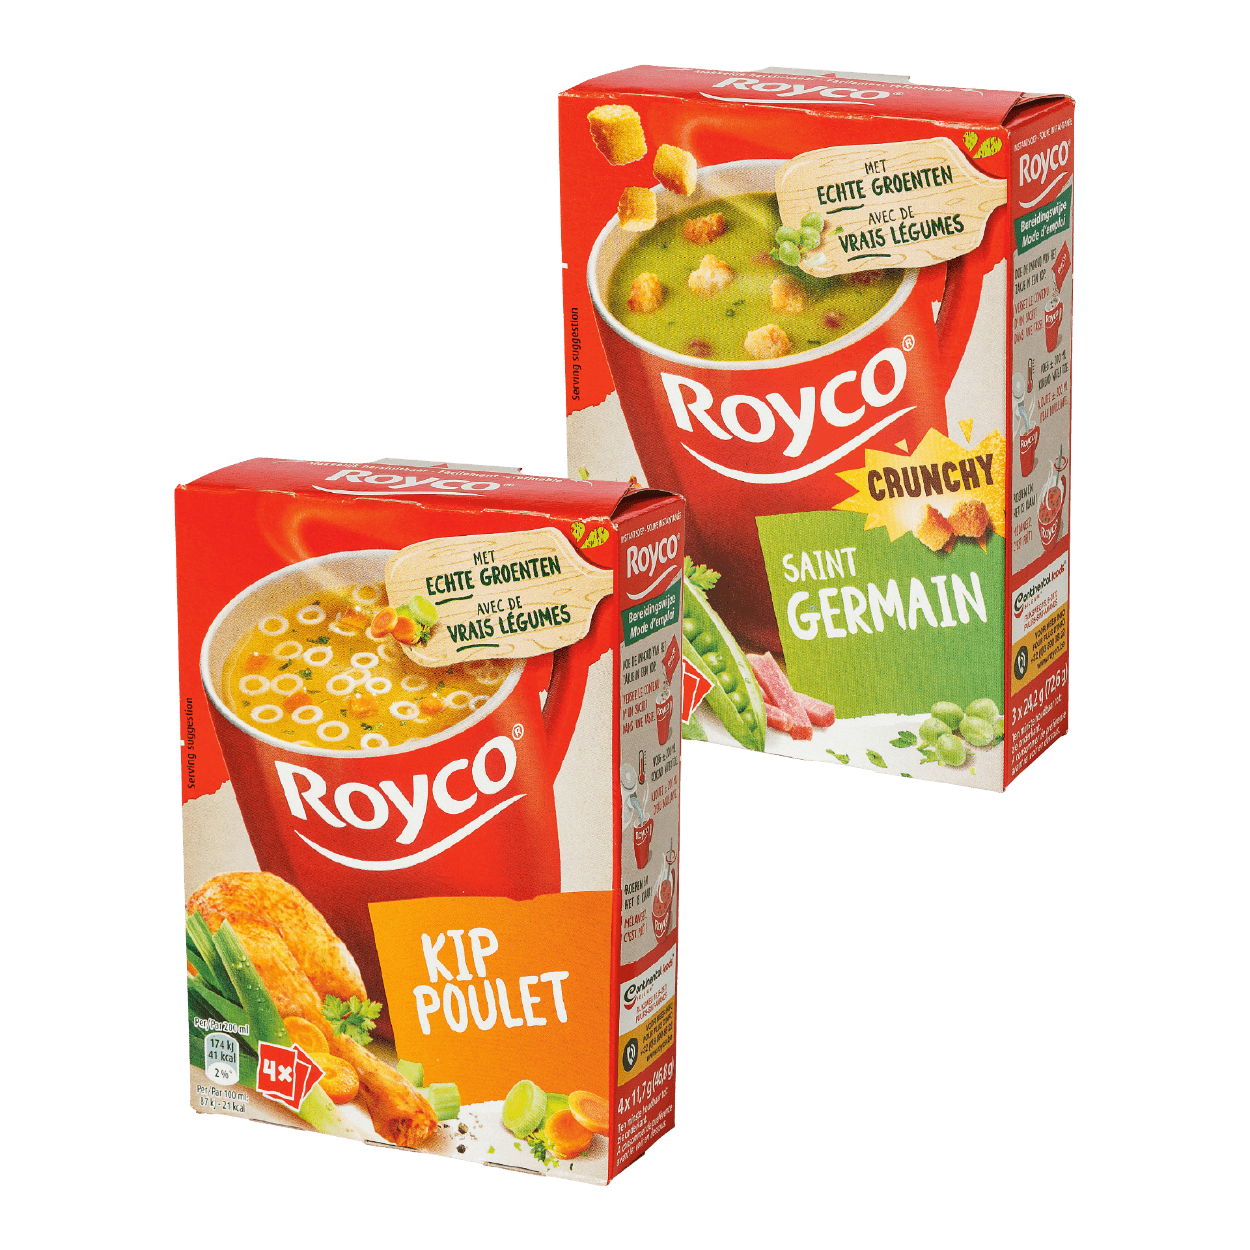 Royco Minute Soup volaille avec croûtons, paquet de 20 sachets